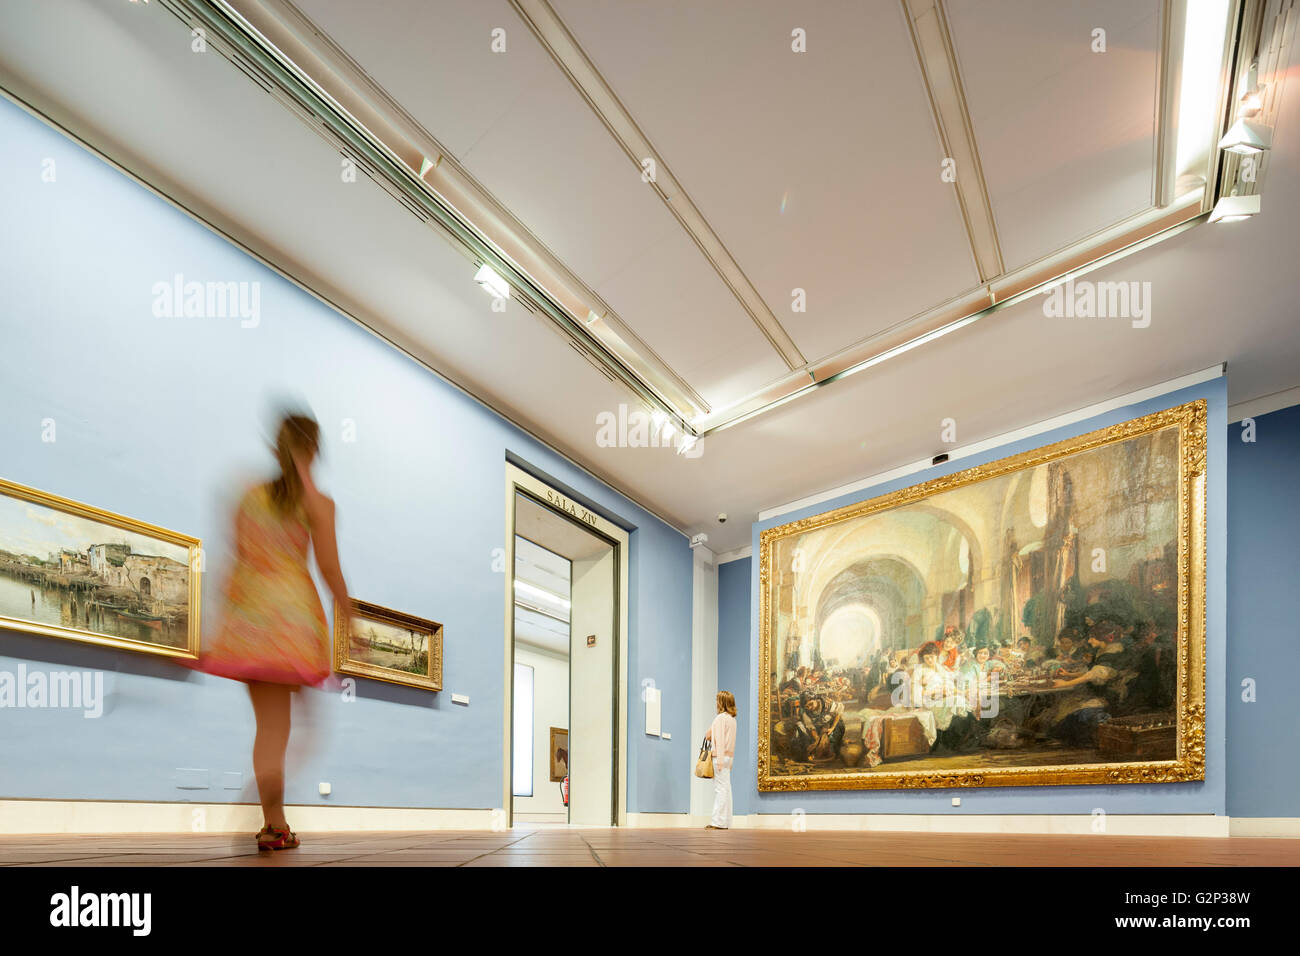 La salle XII, présentant des peintures du 19e siècle, Musée des beaux-arts, Séville, Espagne Banque D'Images